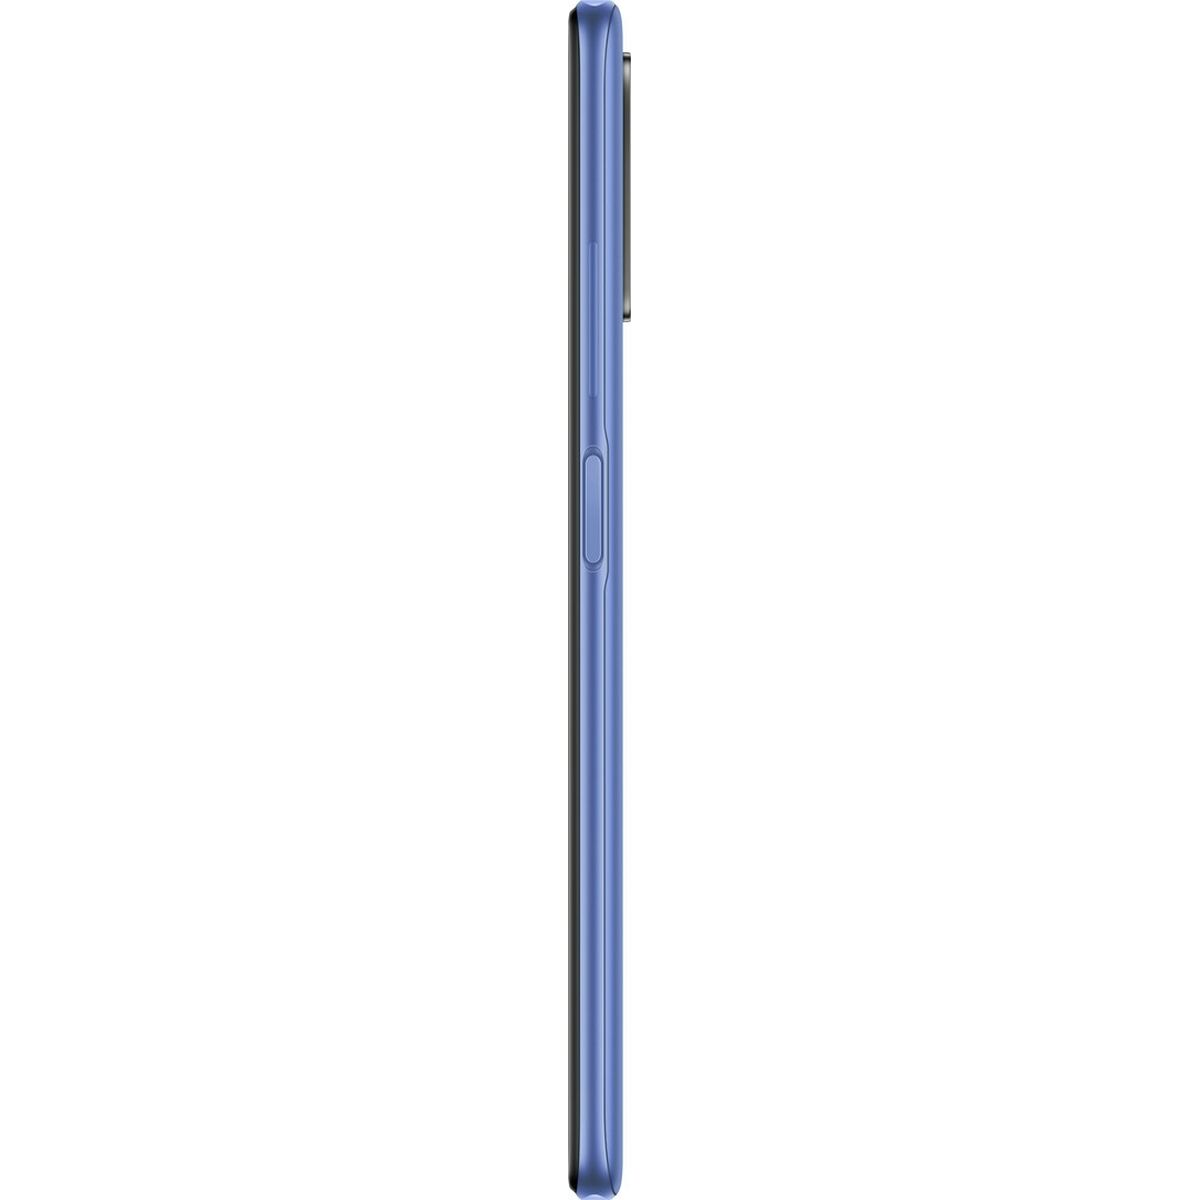 Smartphone Xiaomi Redmi Note 10 5G 6,5" Mediatek Dimensity 700 4 GB RAM 128 GB Blue